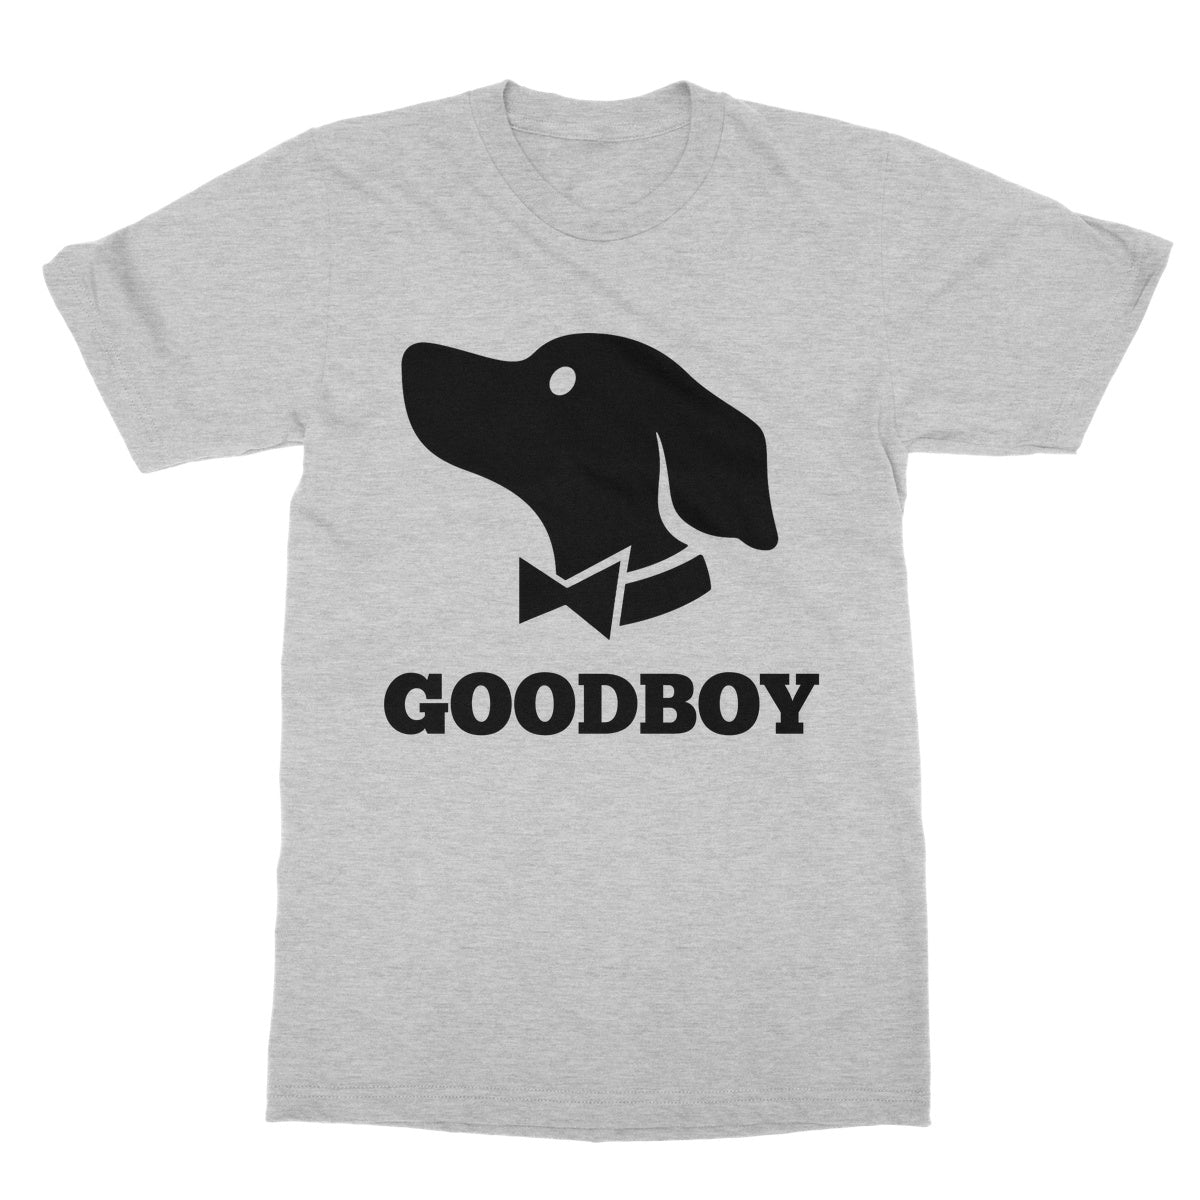 goodboy t shirt grey